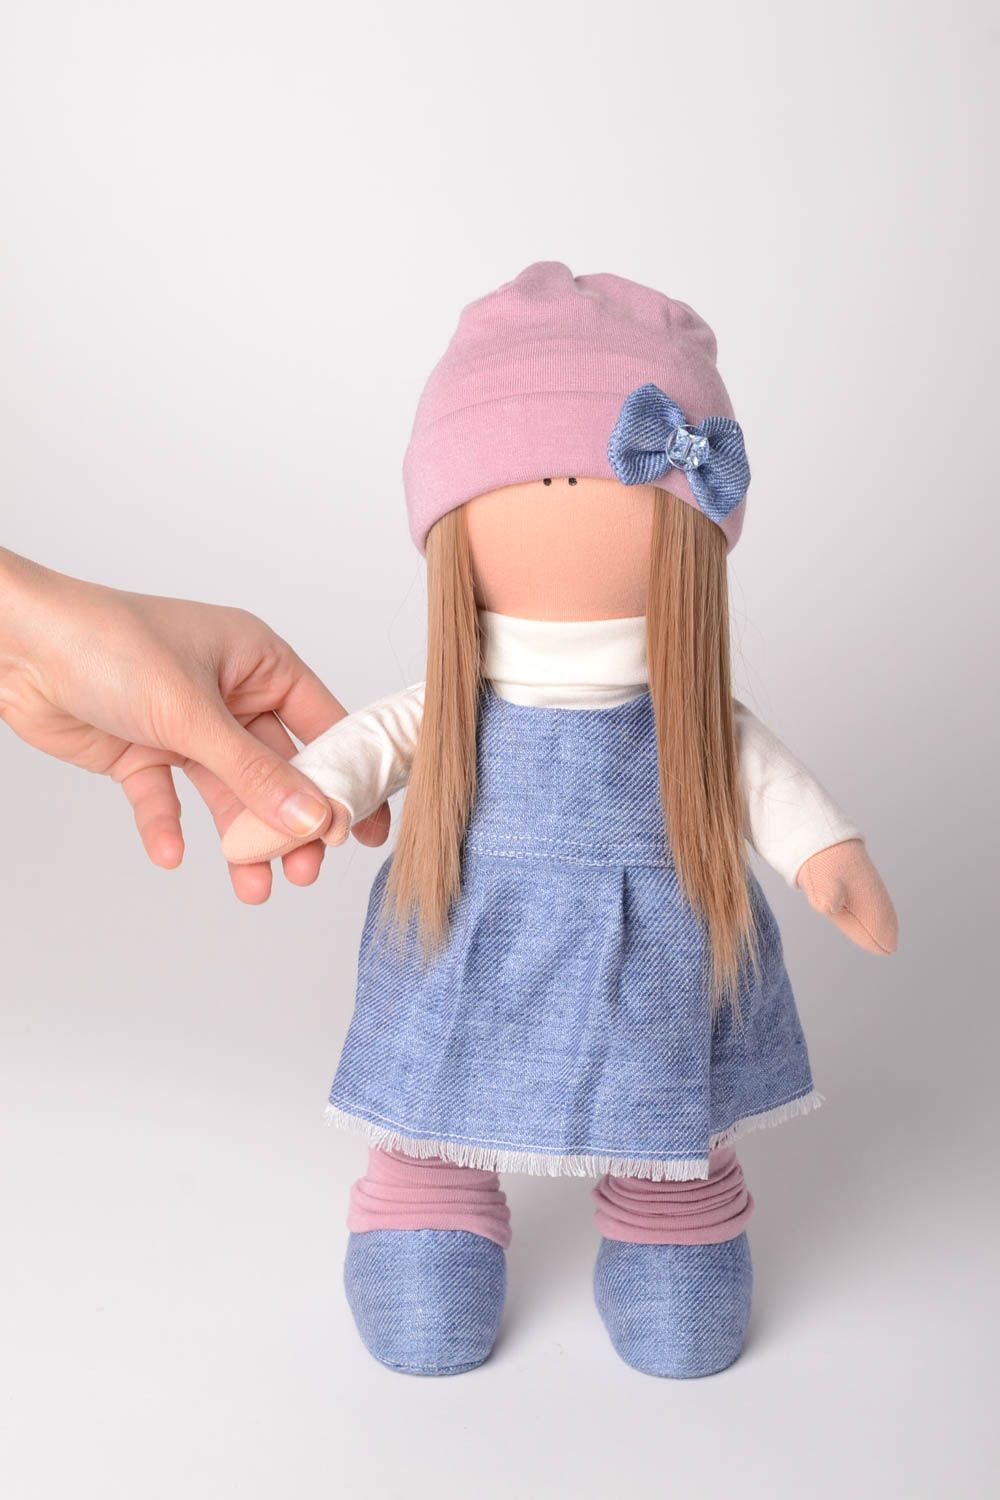 Кукла ручной работы кукла из ткани мягкая кукла трикотажная в джинсовом платье фото 2